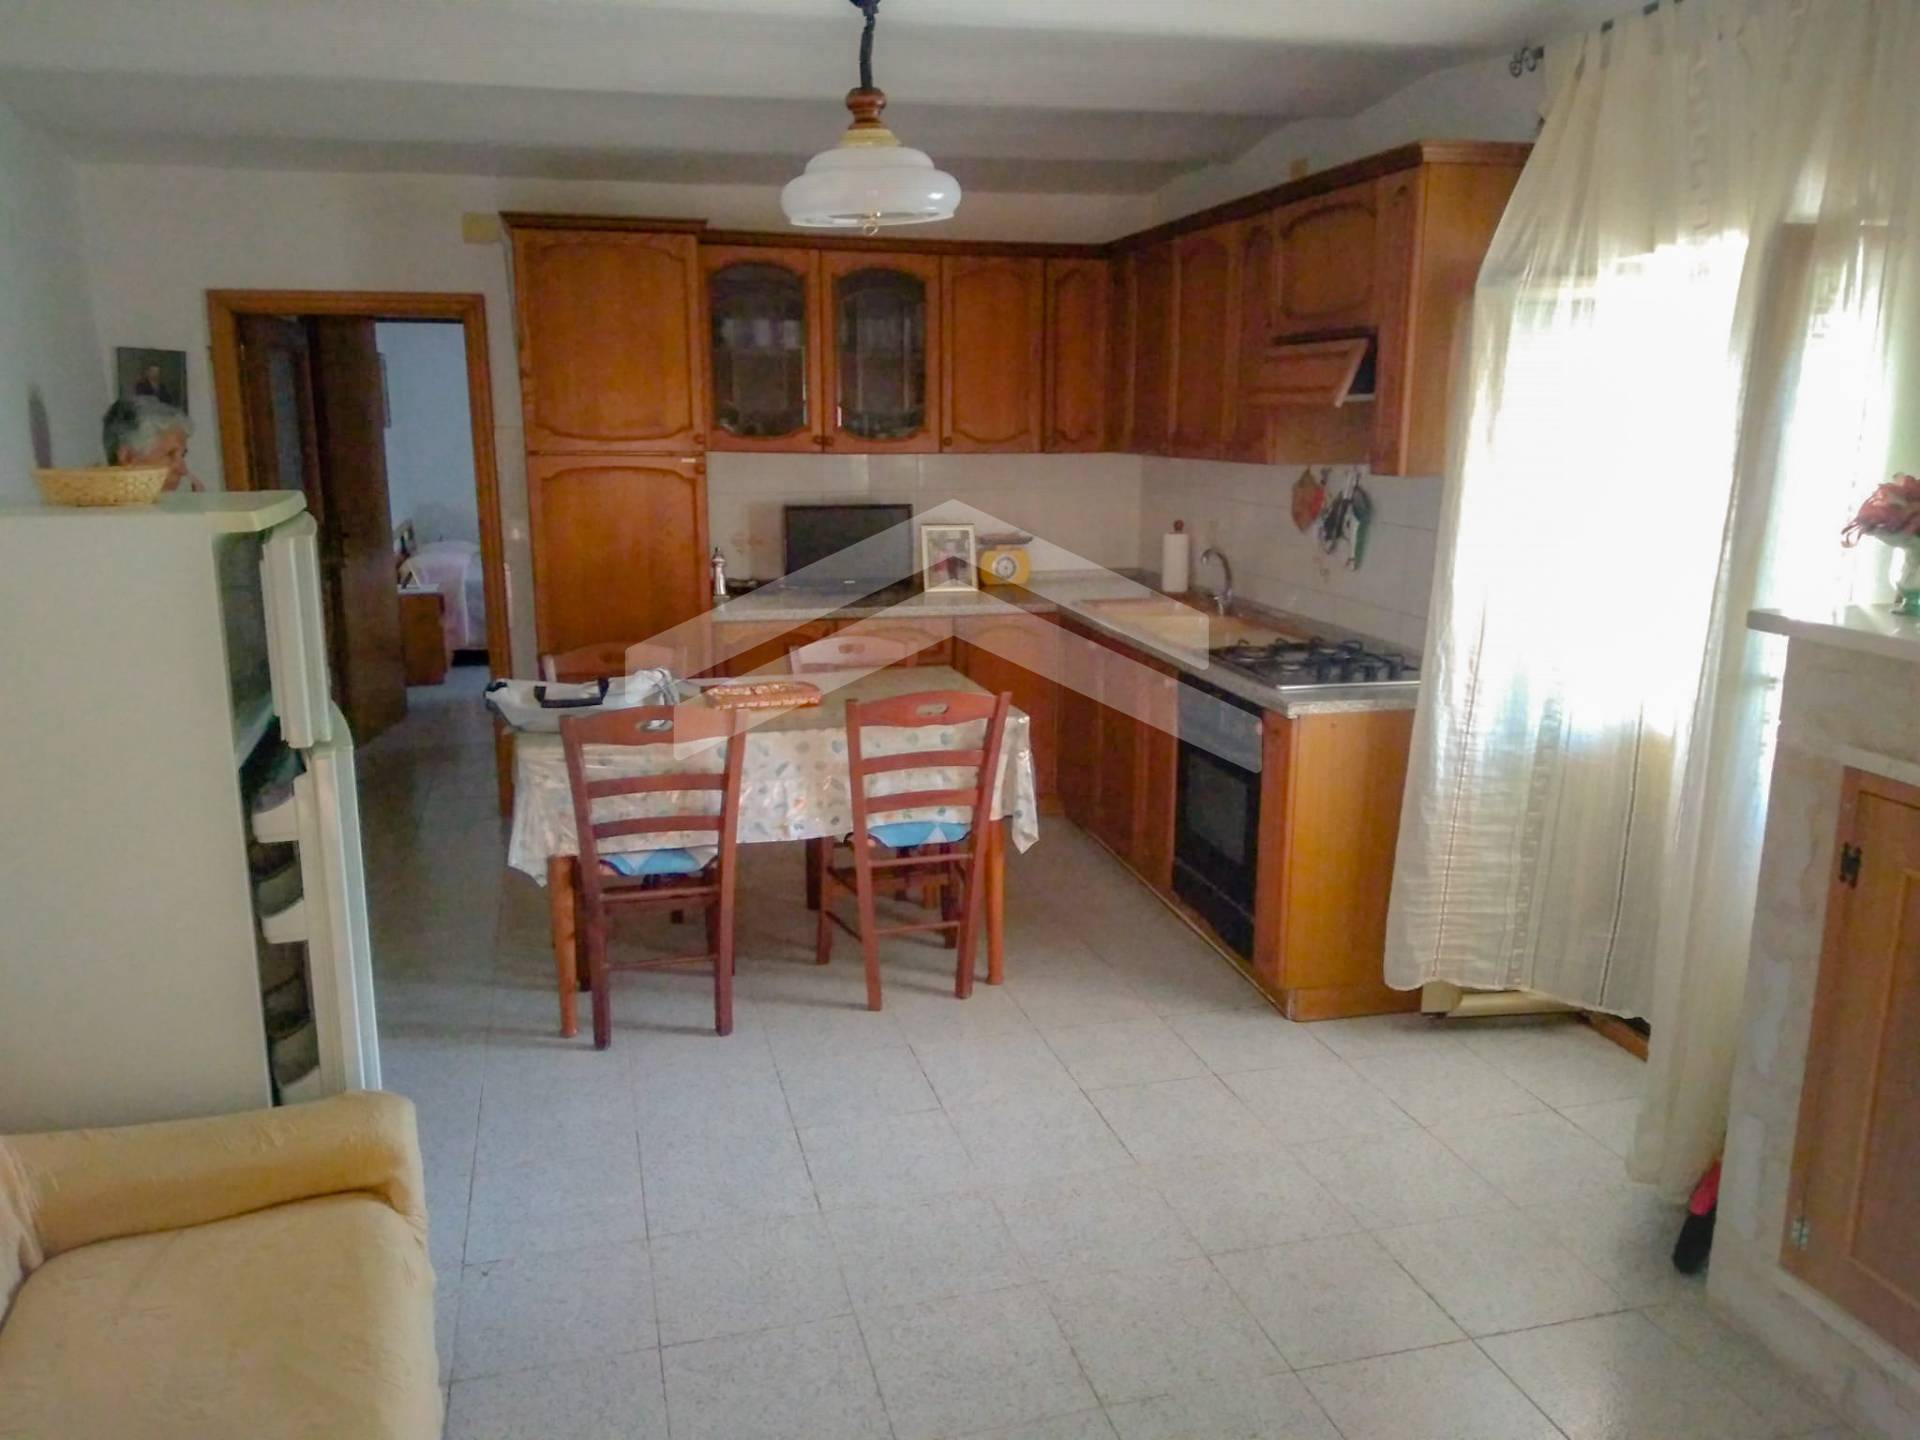 Appartamento in vendita a Guardialfiera, 2 locali, prezzo € 25.000 | PortaleAgenzieImmobiliari.it